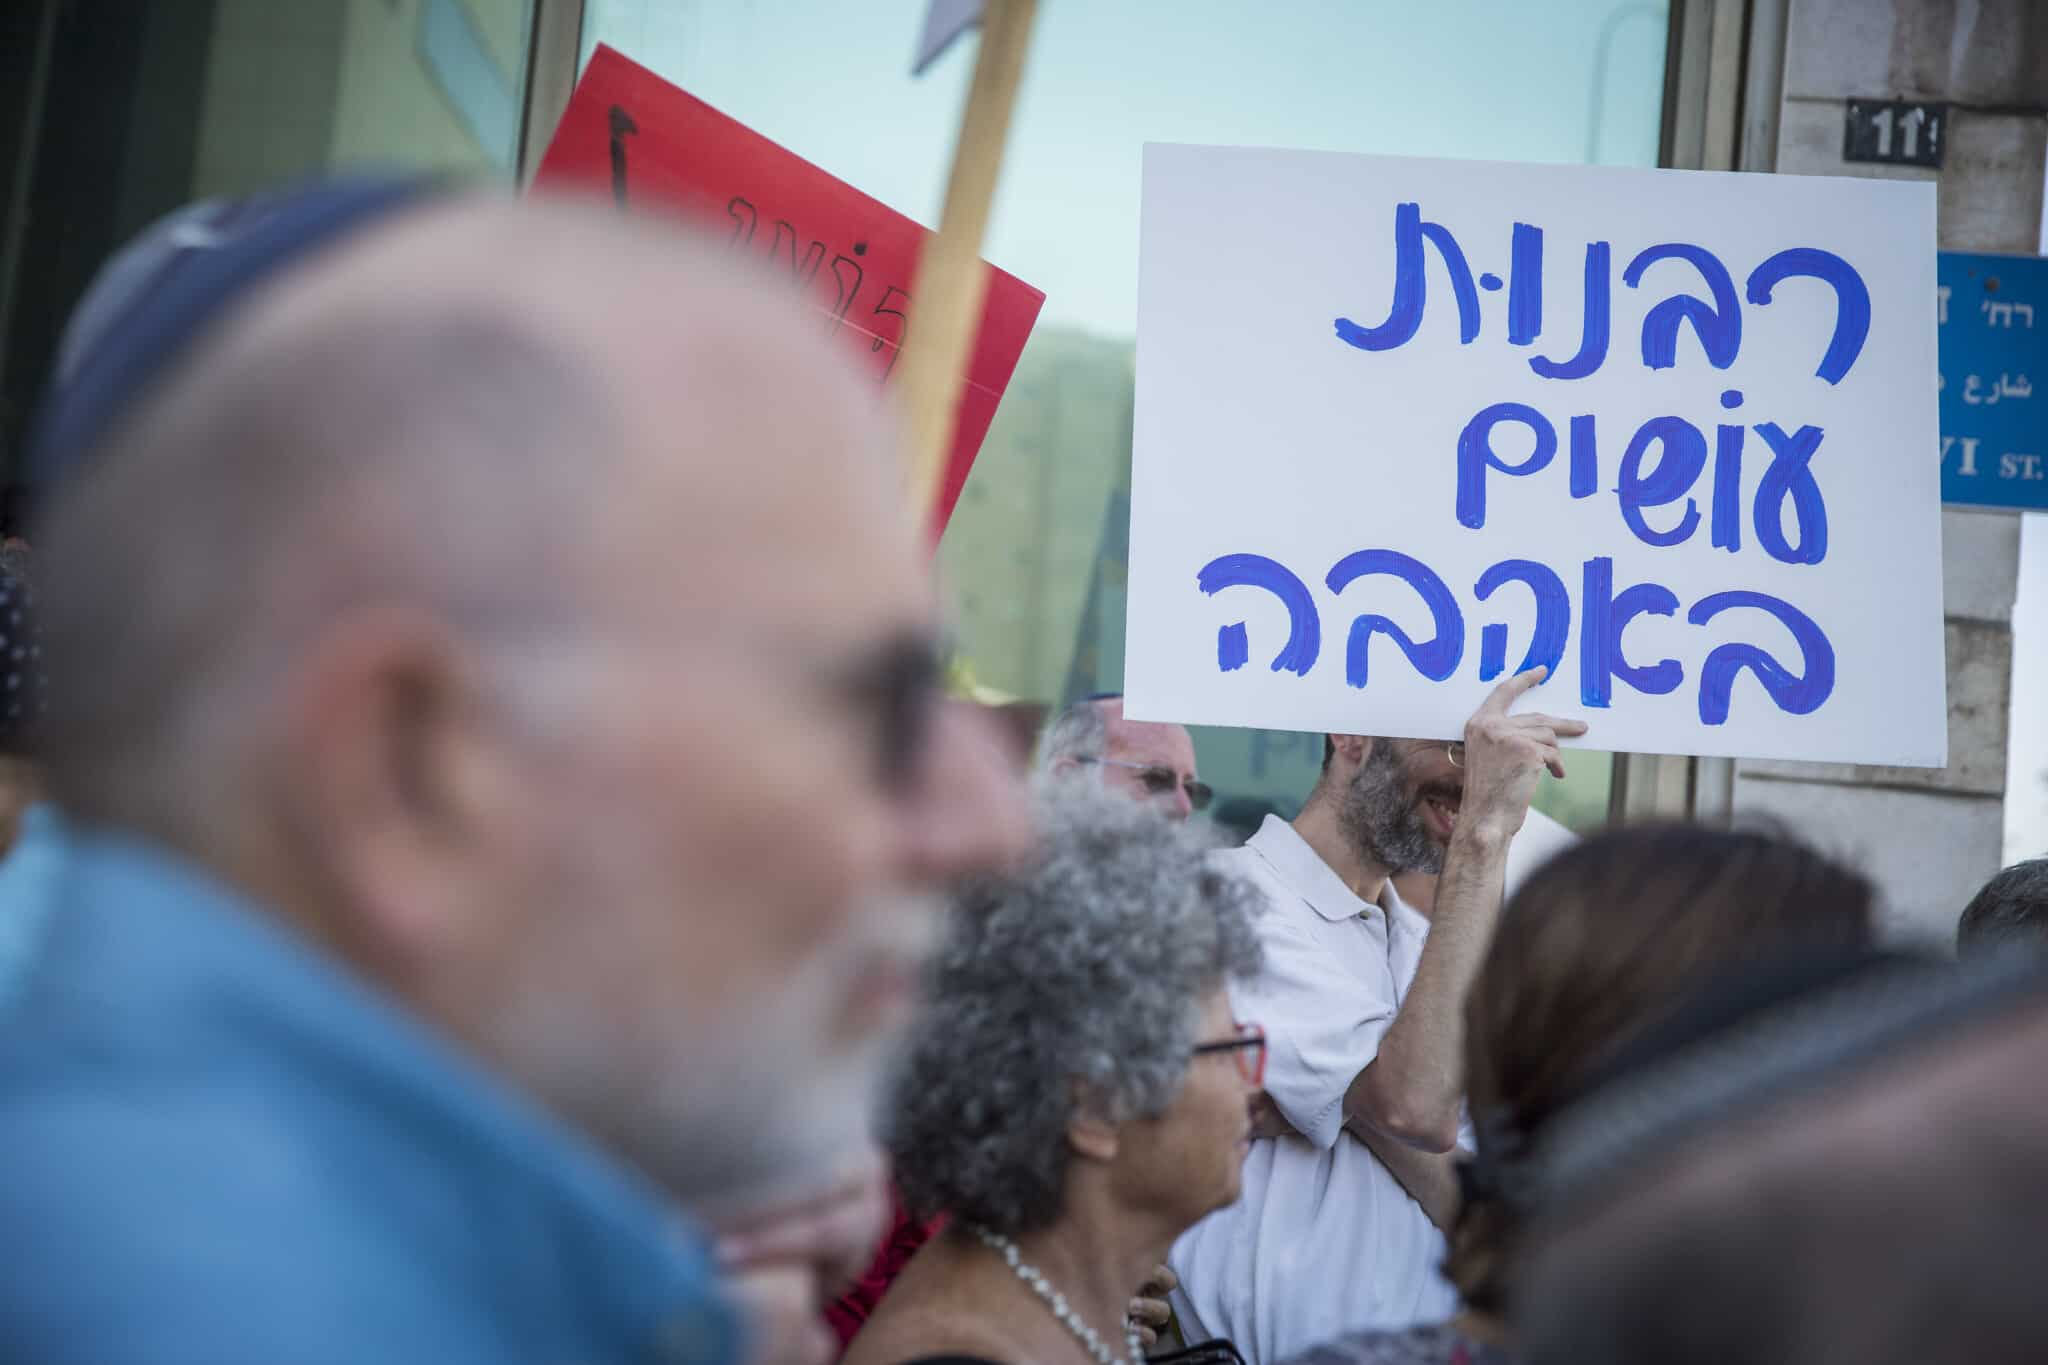 יהודים אורתדוקסים וקונסרבטיבים ישראלים ואמריקאים מפגינים ליד הרבנות הראשית בירושלים במחאה על פסילת גיוריהם, יולי 2016 (צילום: Hadas Parush/Flash90)